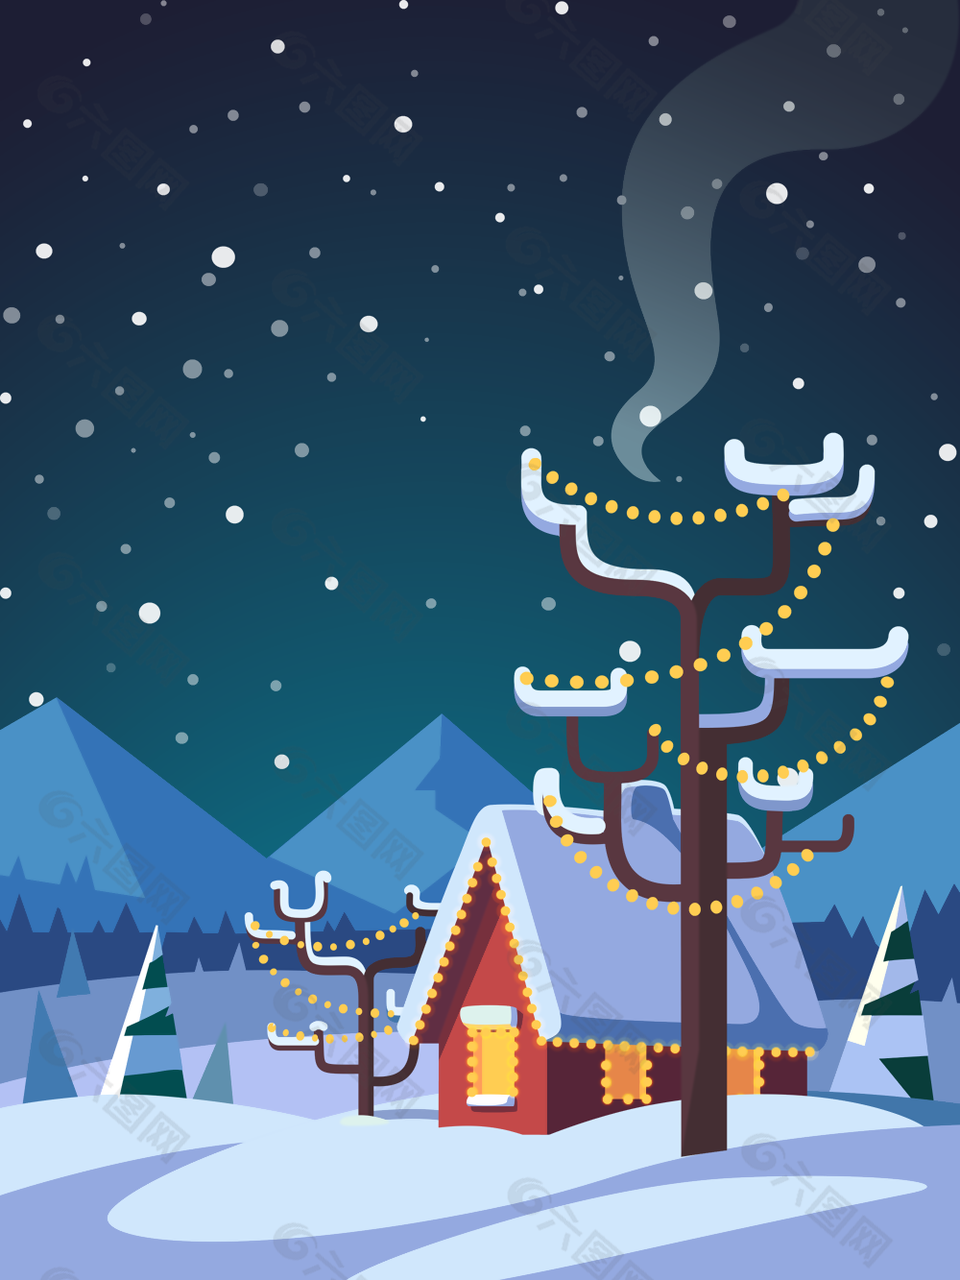 手绘插画风圣诞节下雪背景图下载